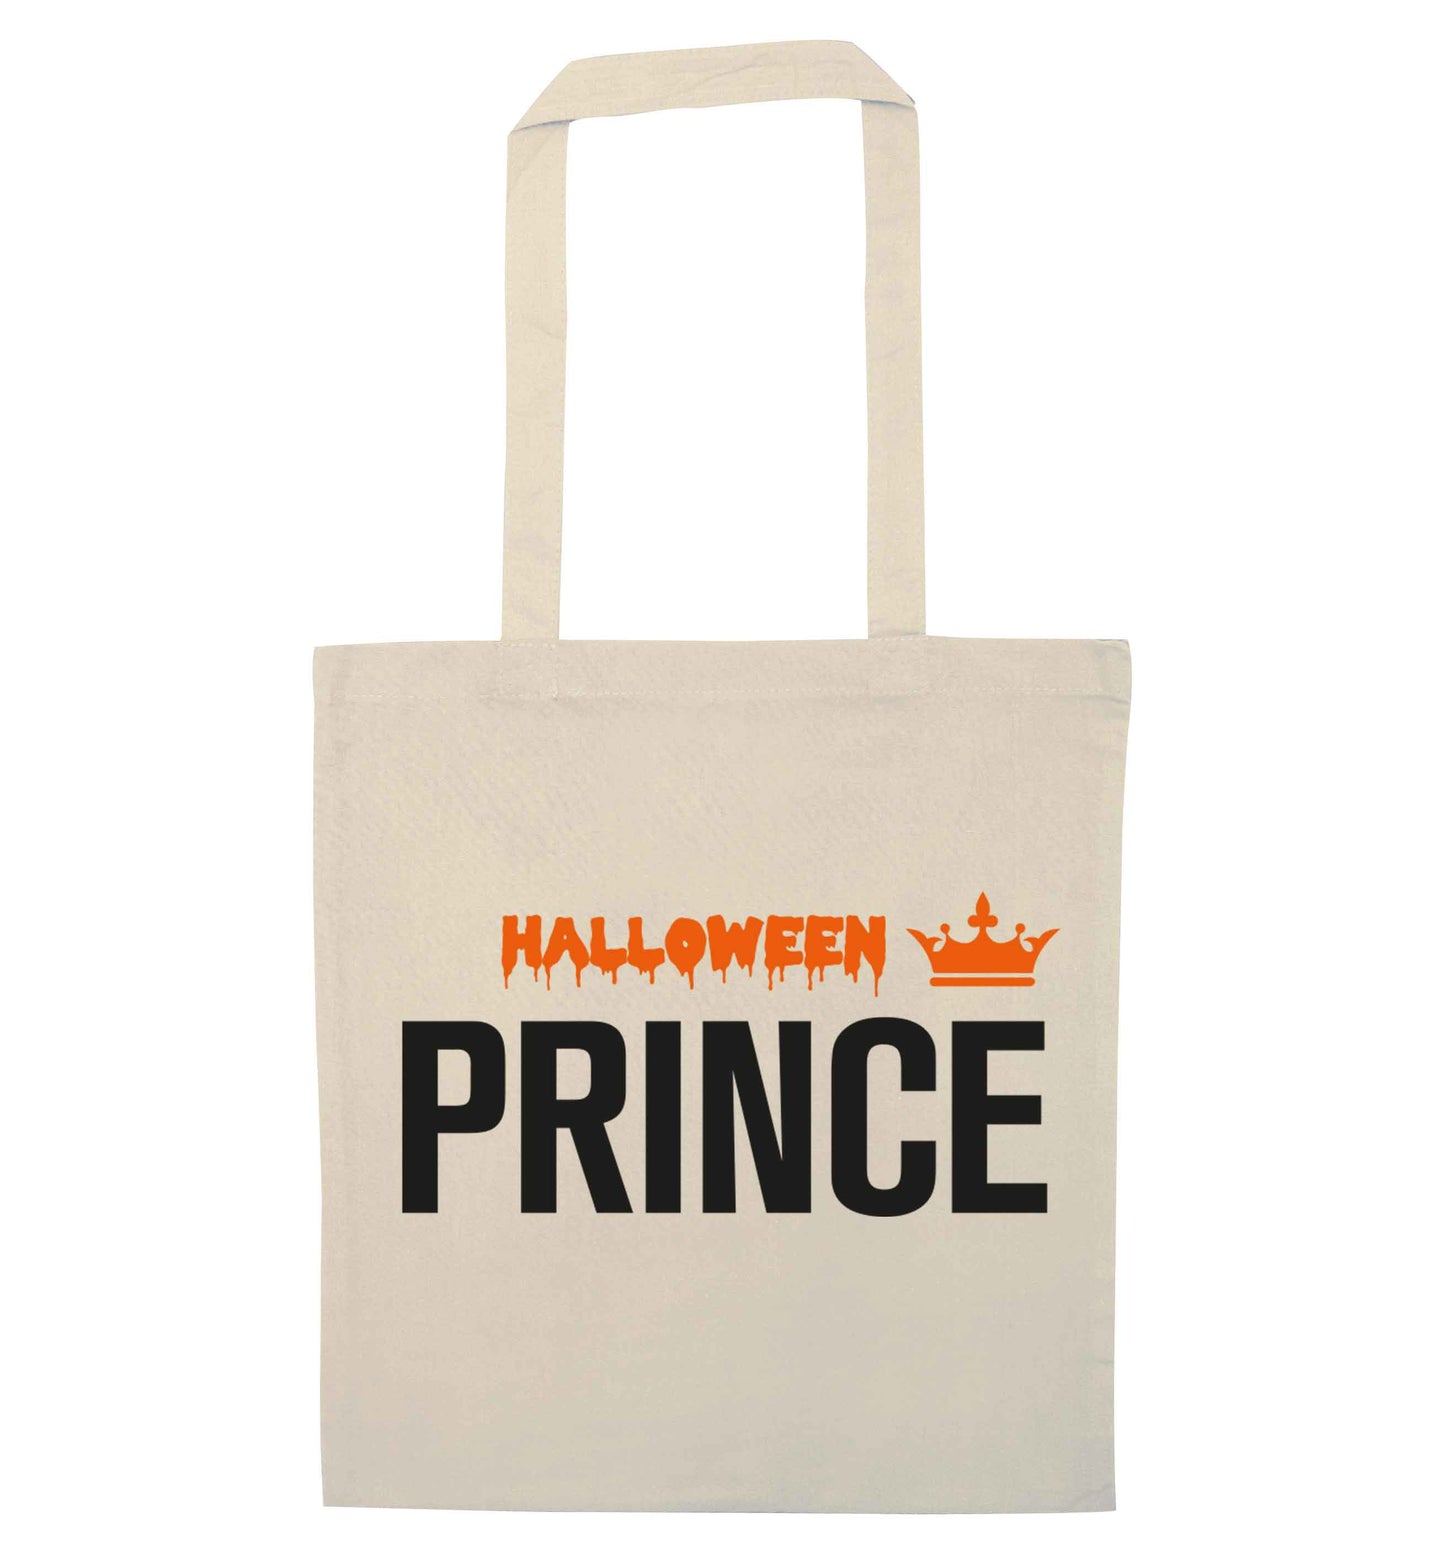 Halloween prince natural tote bag